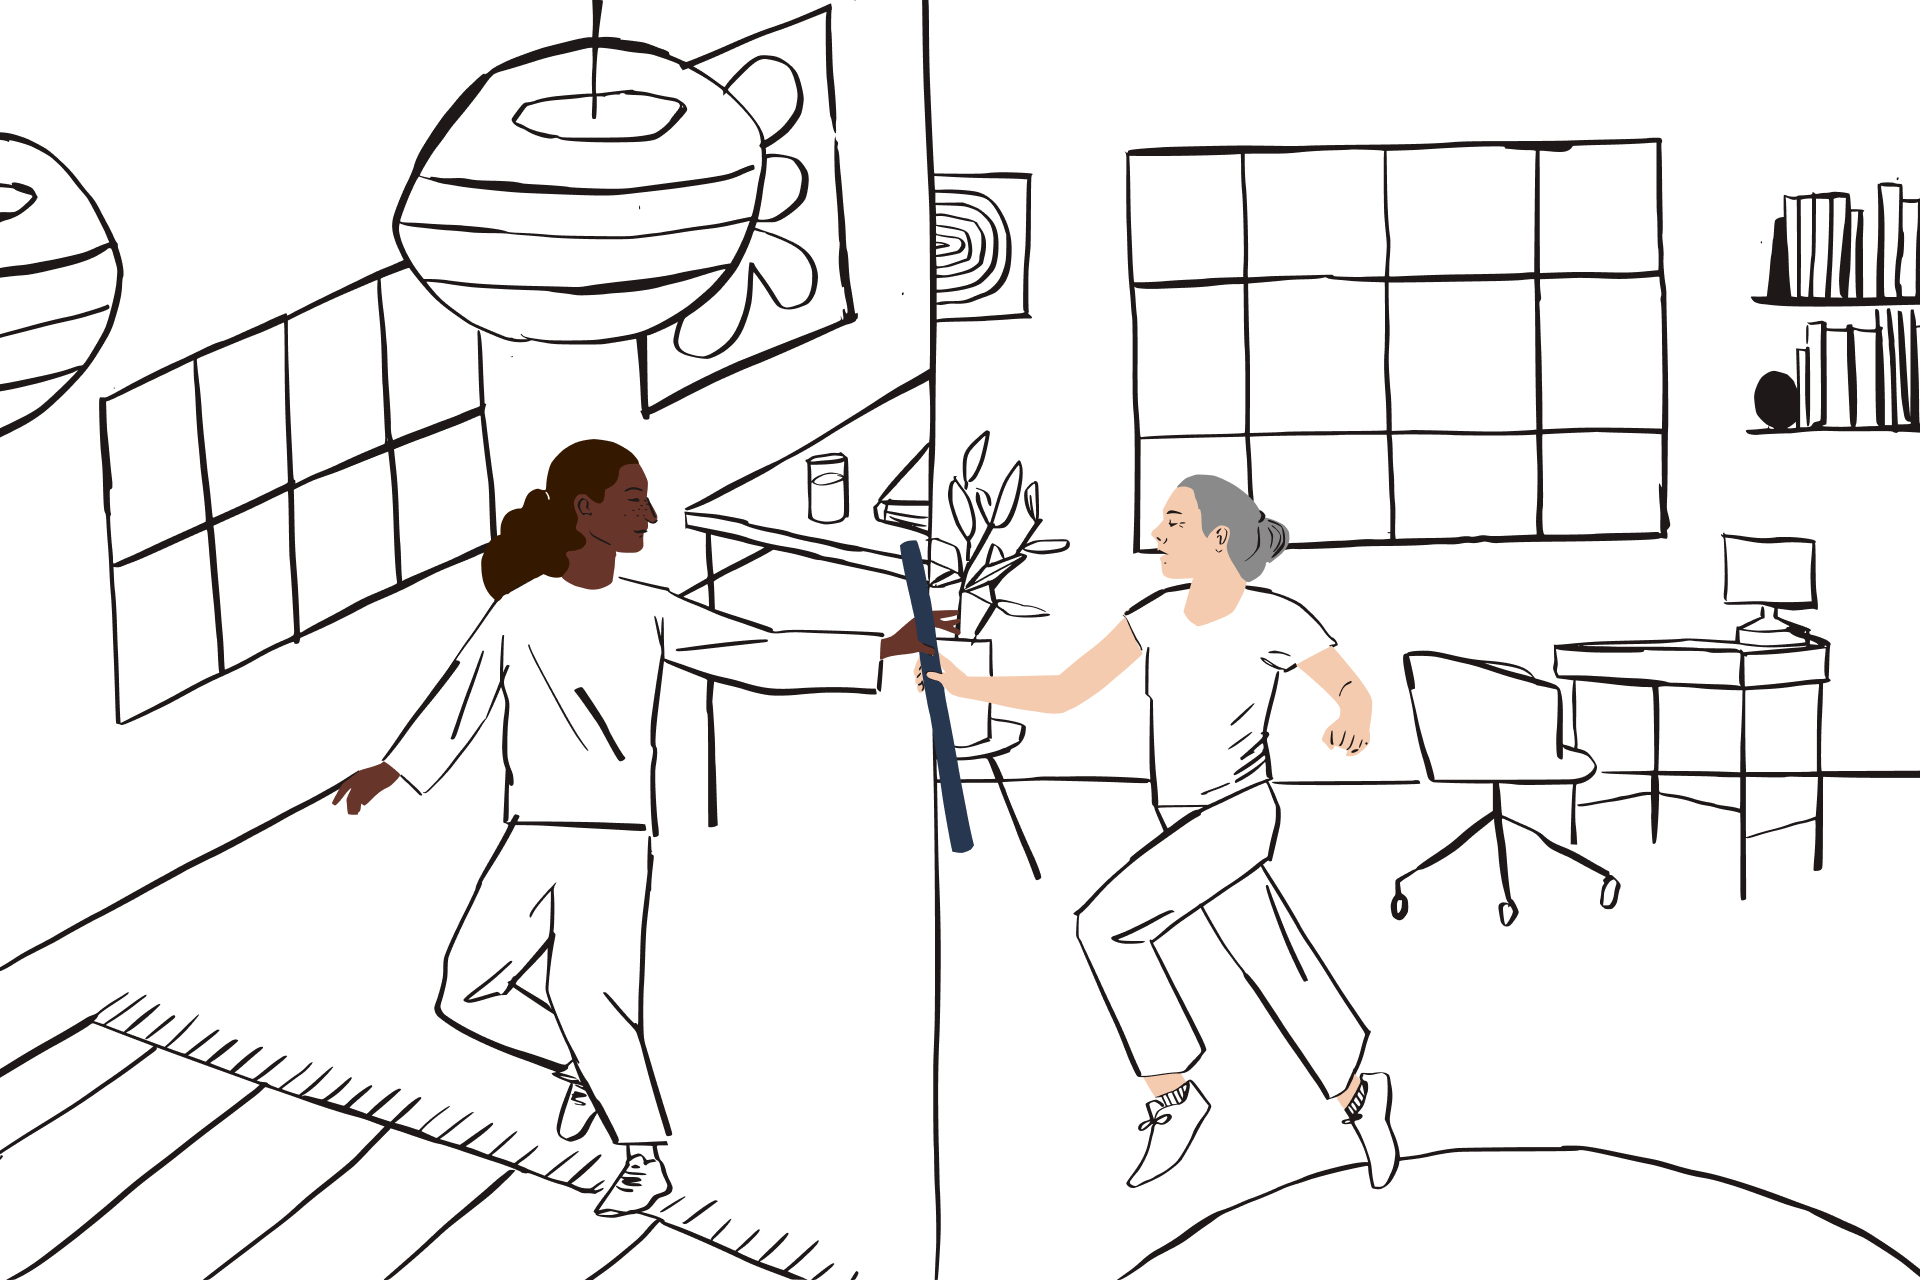 Illustration einer Person, die einen Staffelstab aus einem Home-Office-Rahmen an eine Person in einem anderen Raum weitergibt